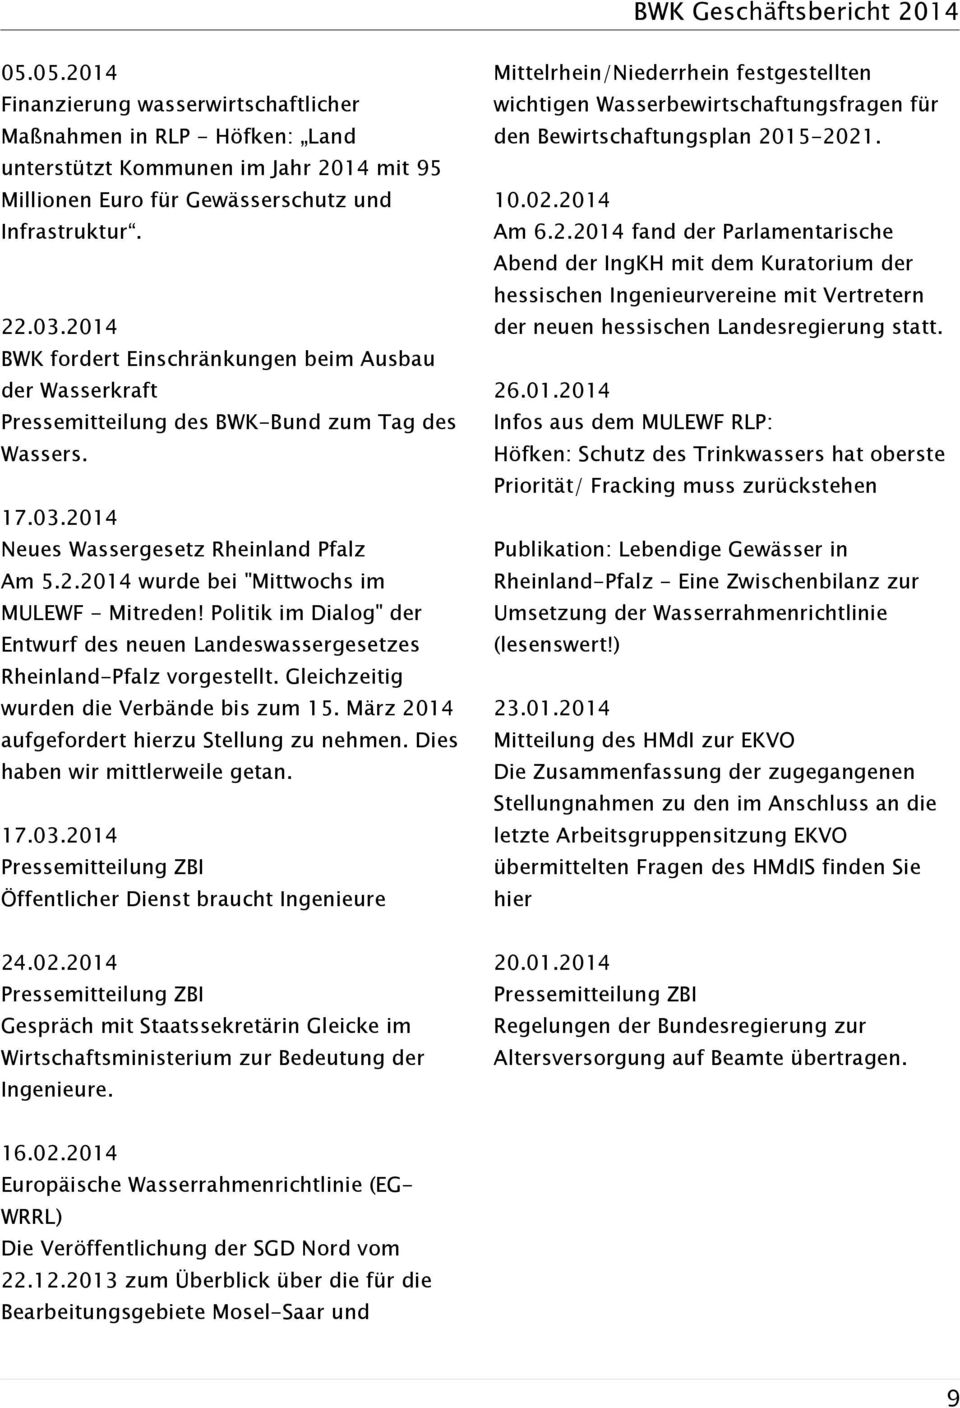 Politik im Dialog" der Entwurf des neuen Landeswassergesetzes Rheinland-Pfalz vorgestellt. Gleichzeitig wurden die Verbände bis zum 15. März 2014 aufgefordert hierzu Stellung zu nehmen.